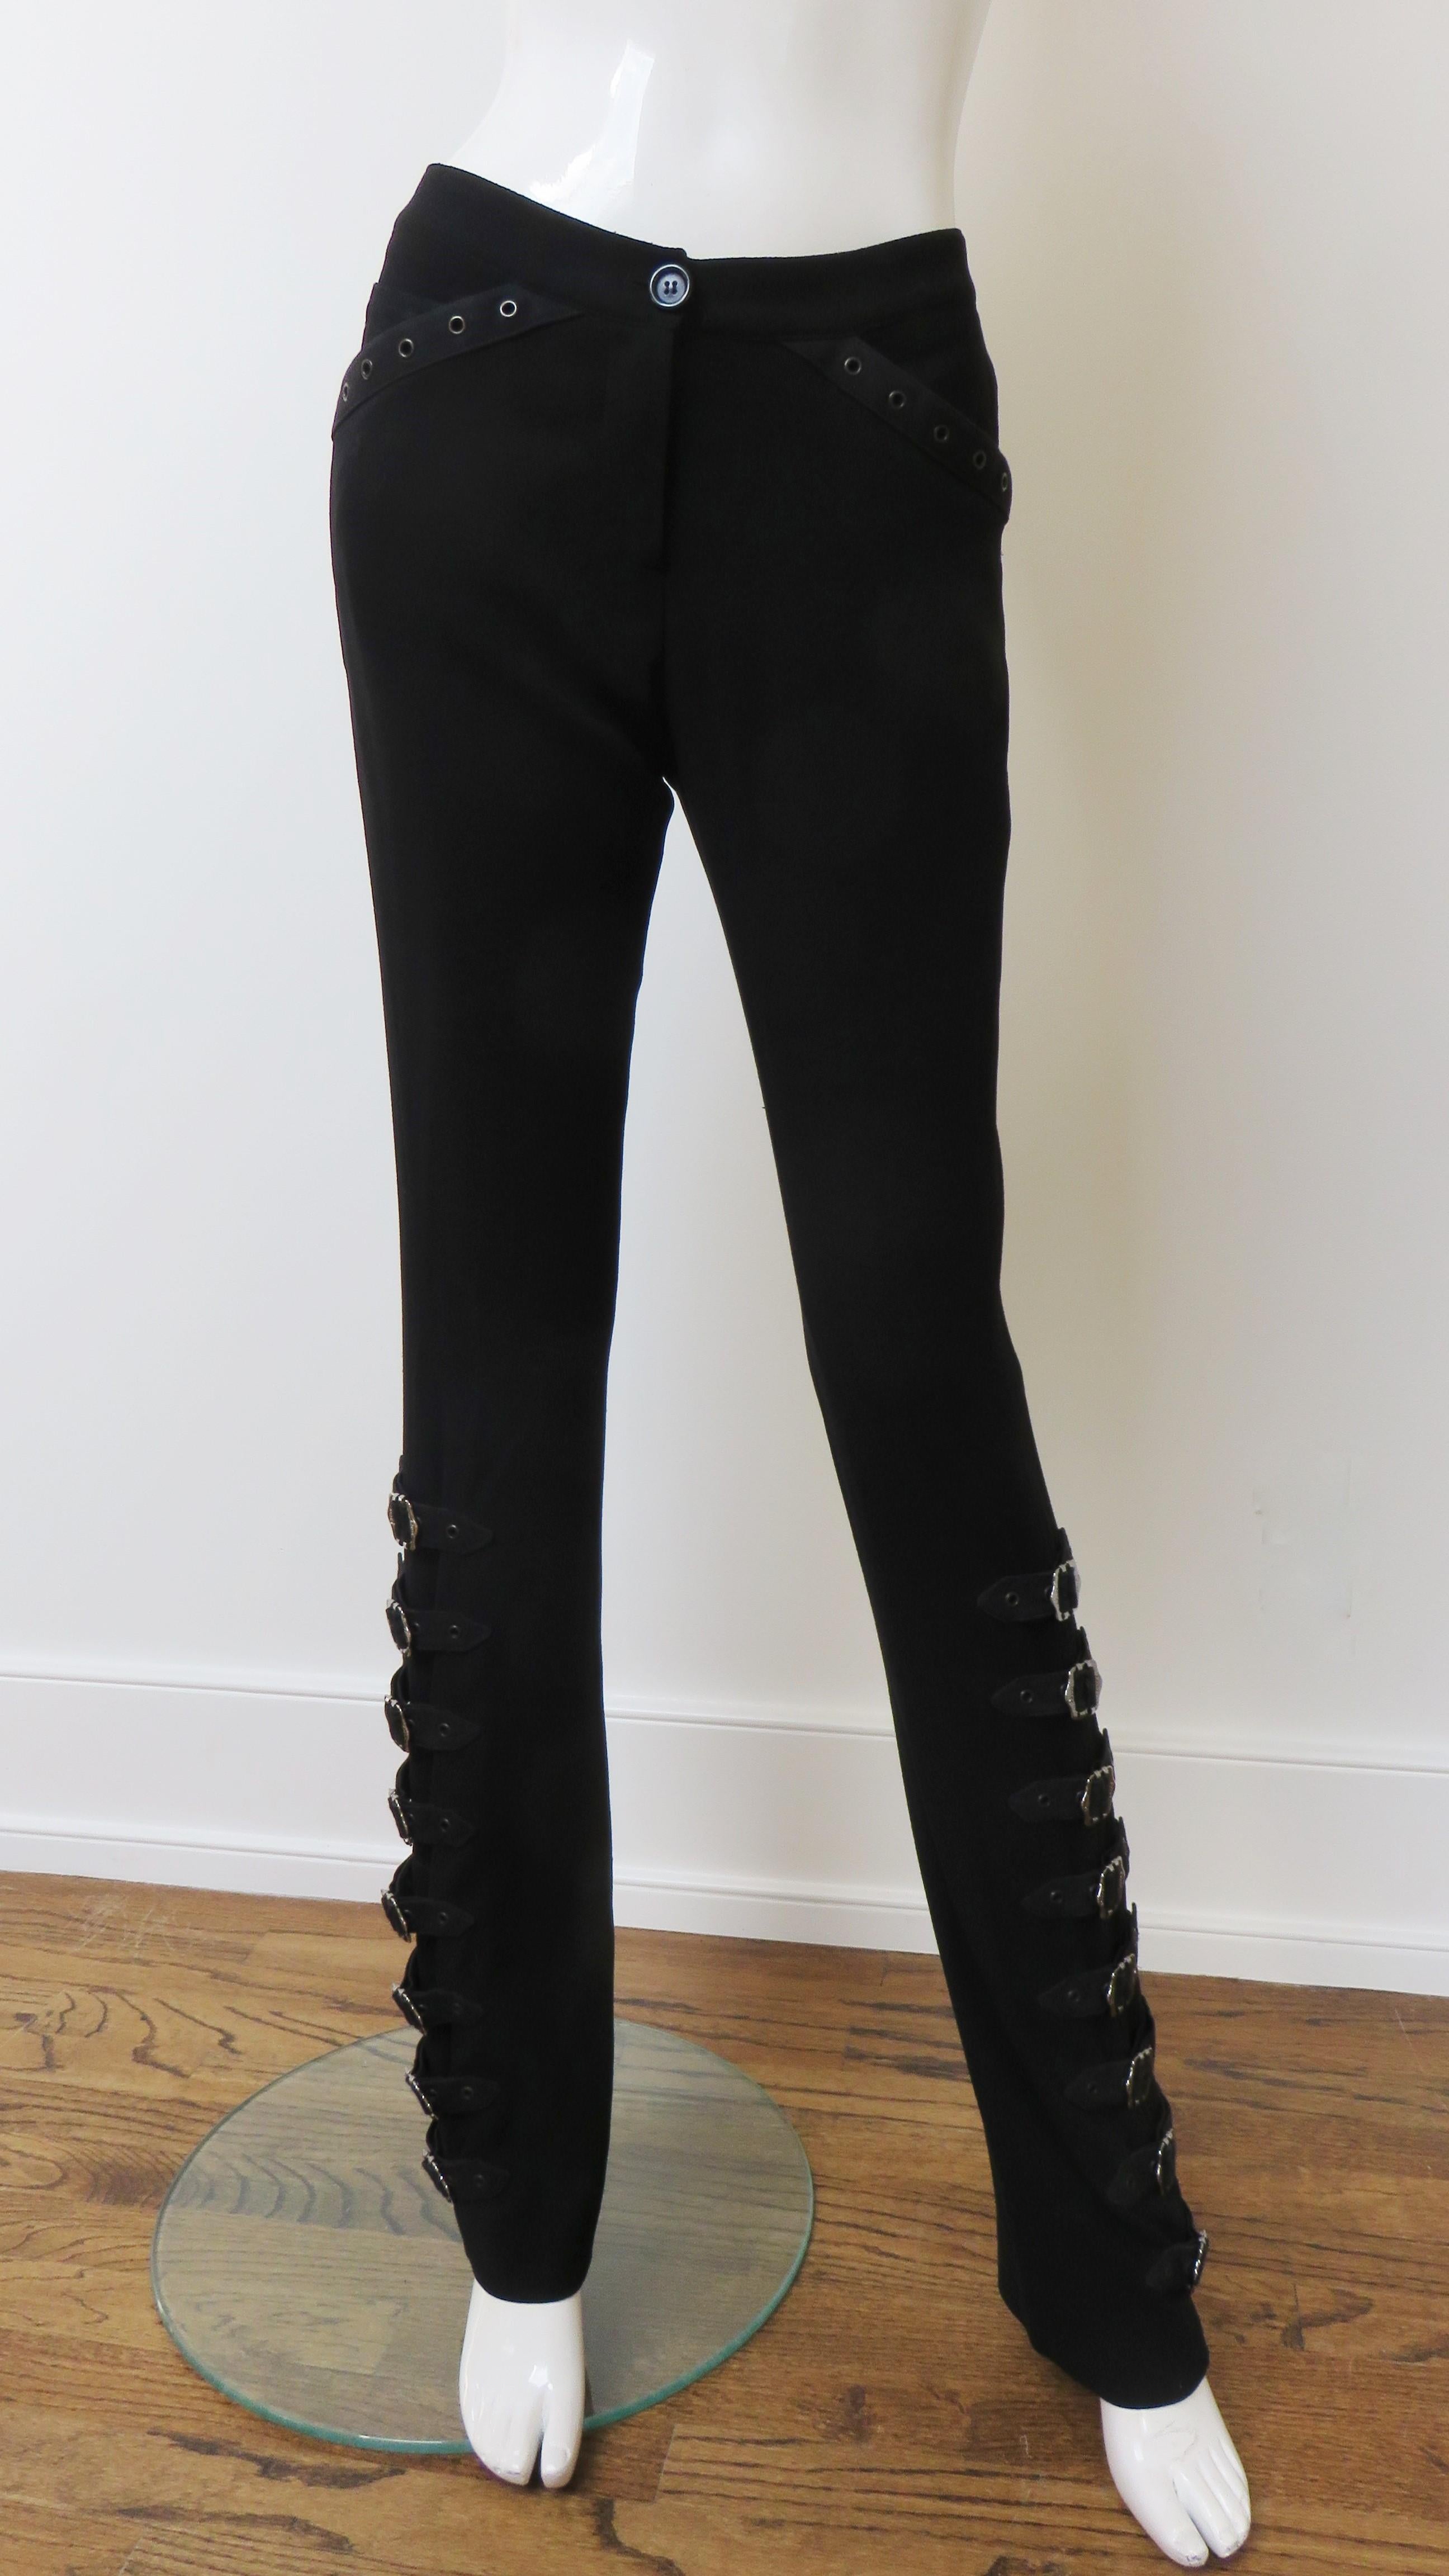 Fabelhafte, leichte schwarze Wollhose von John Galliano für Christian Dior.  Sie hat einen Bund mit Knopfleiste und Reißverschluss, mit Ösen versehene Vordertaschen und die kultigen silbernen Schnallen und Riemen mit Dior-Schriftzug an den Seiten